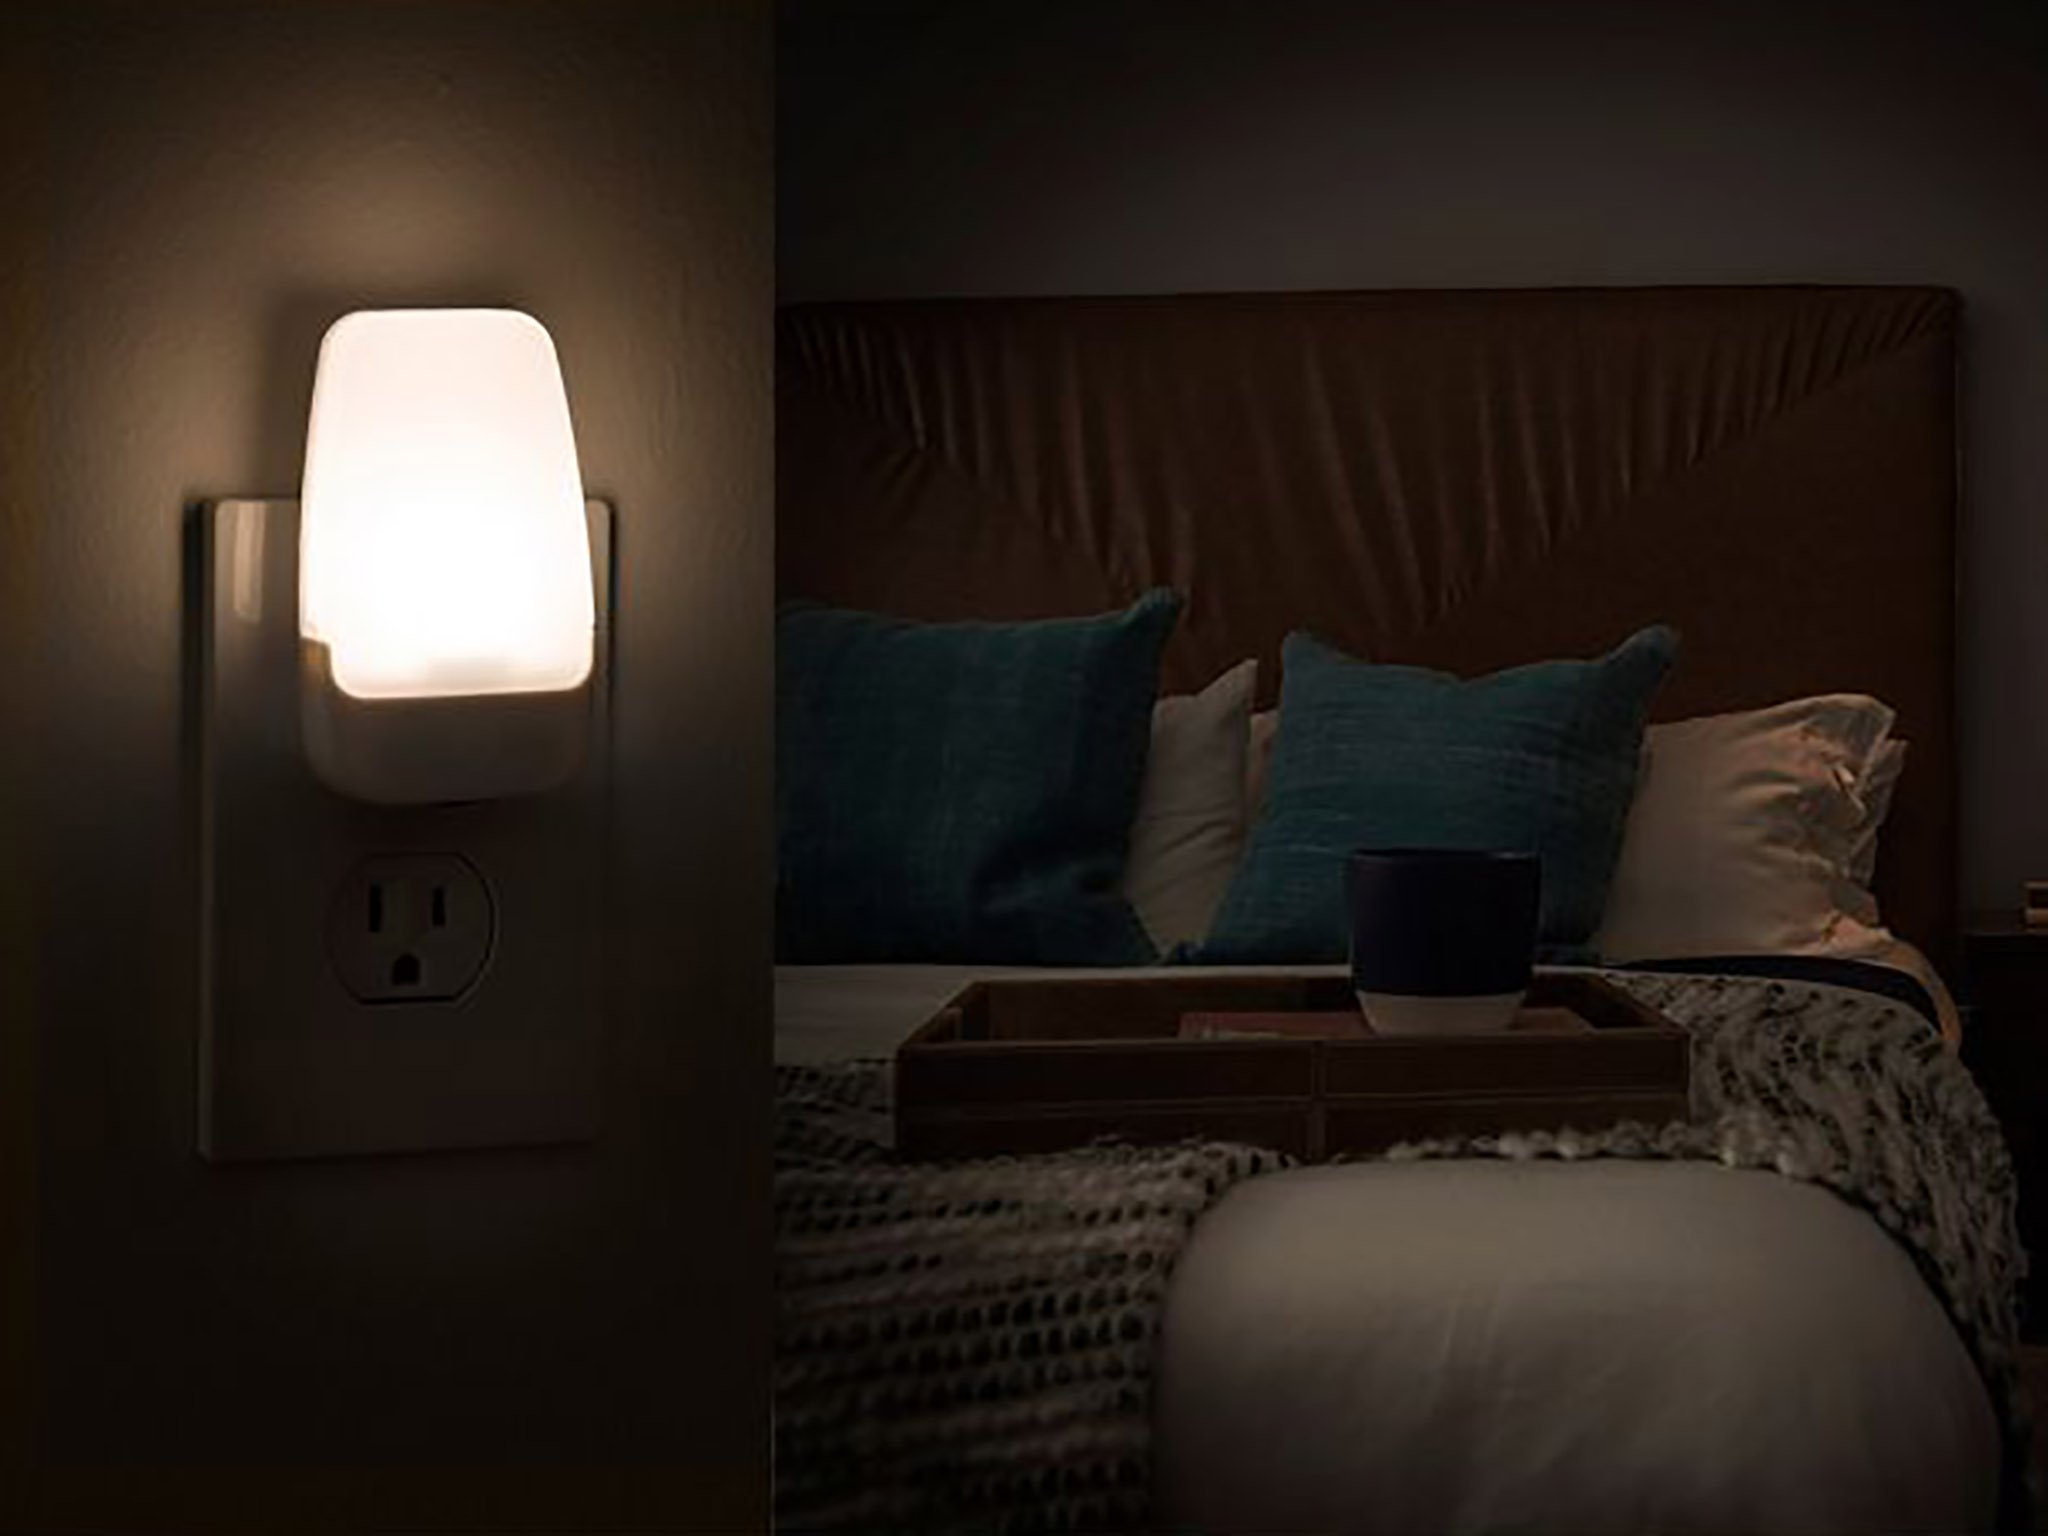 Best Night Light 2022 Android Central, Bathroom Night Light Ideas For Bedroom